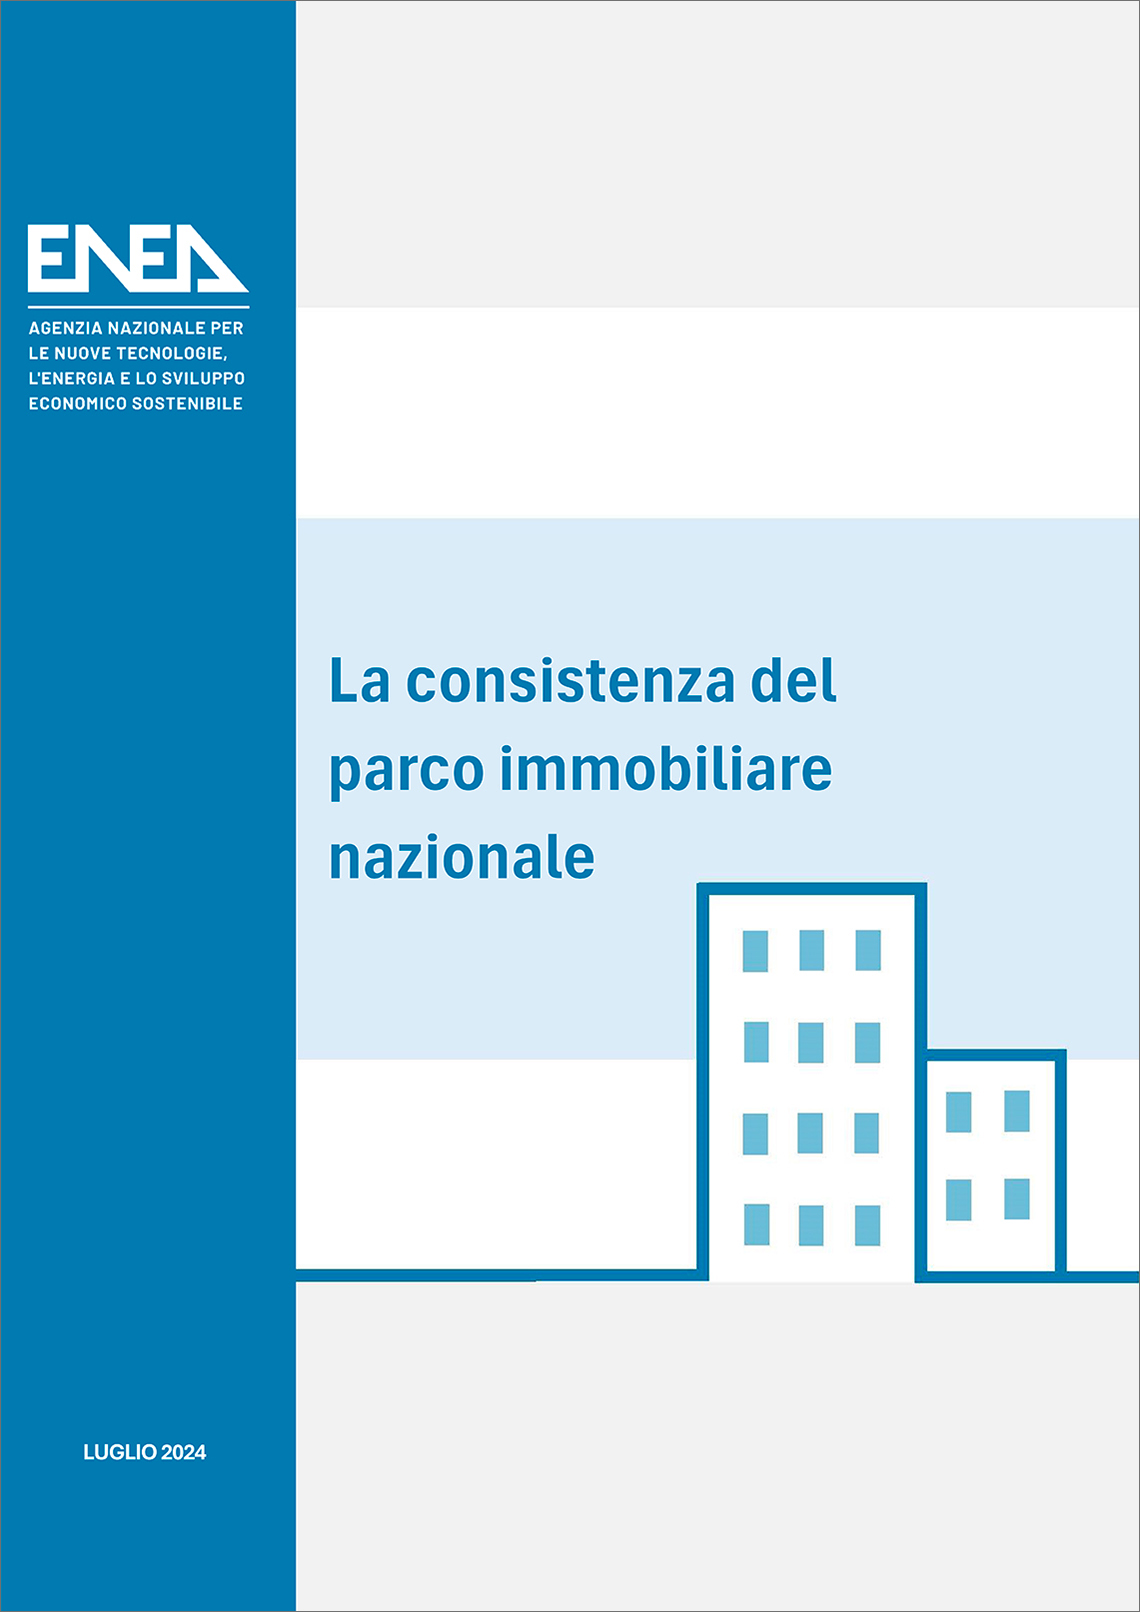 La copertina del volume "La consistenza del parco immobiliare nazionale", realizzato dal Dipartimento Unità per l’Efficienza Energetica dell’ENEA su sfondo azzurro, bianco e grigio con logo ENEA e la scritta "luglio 2024"